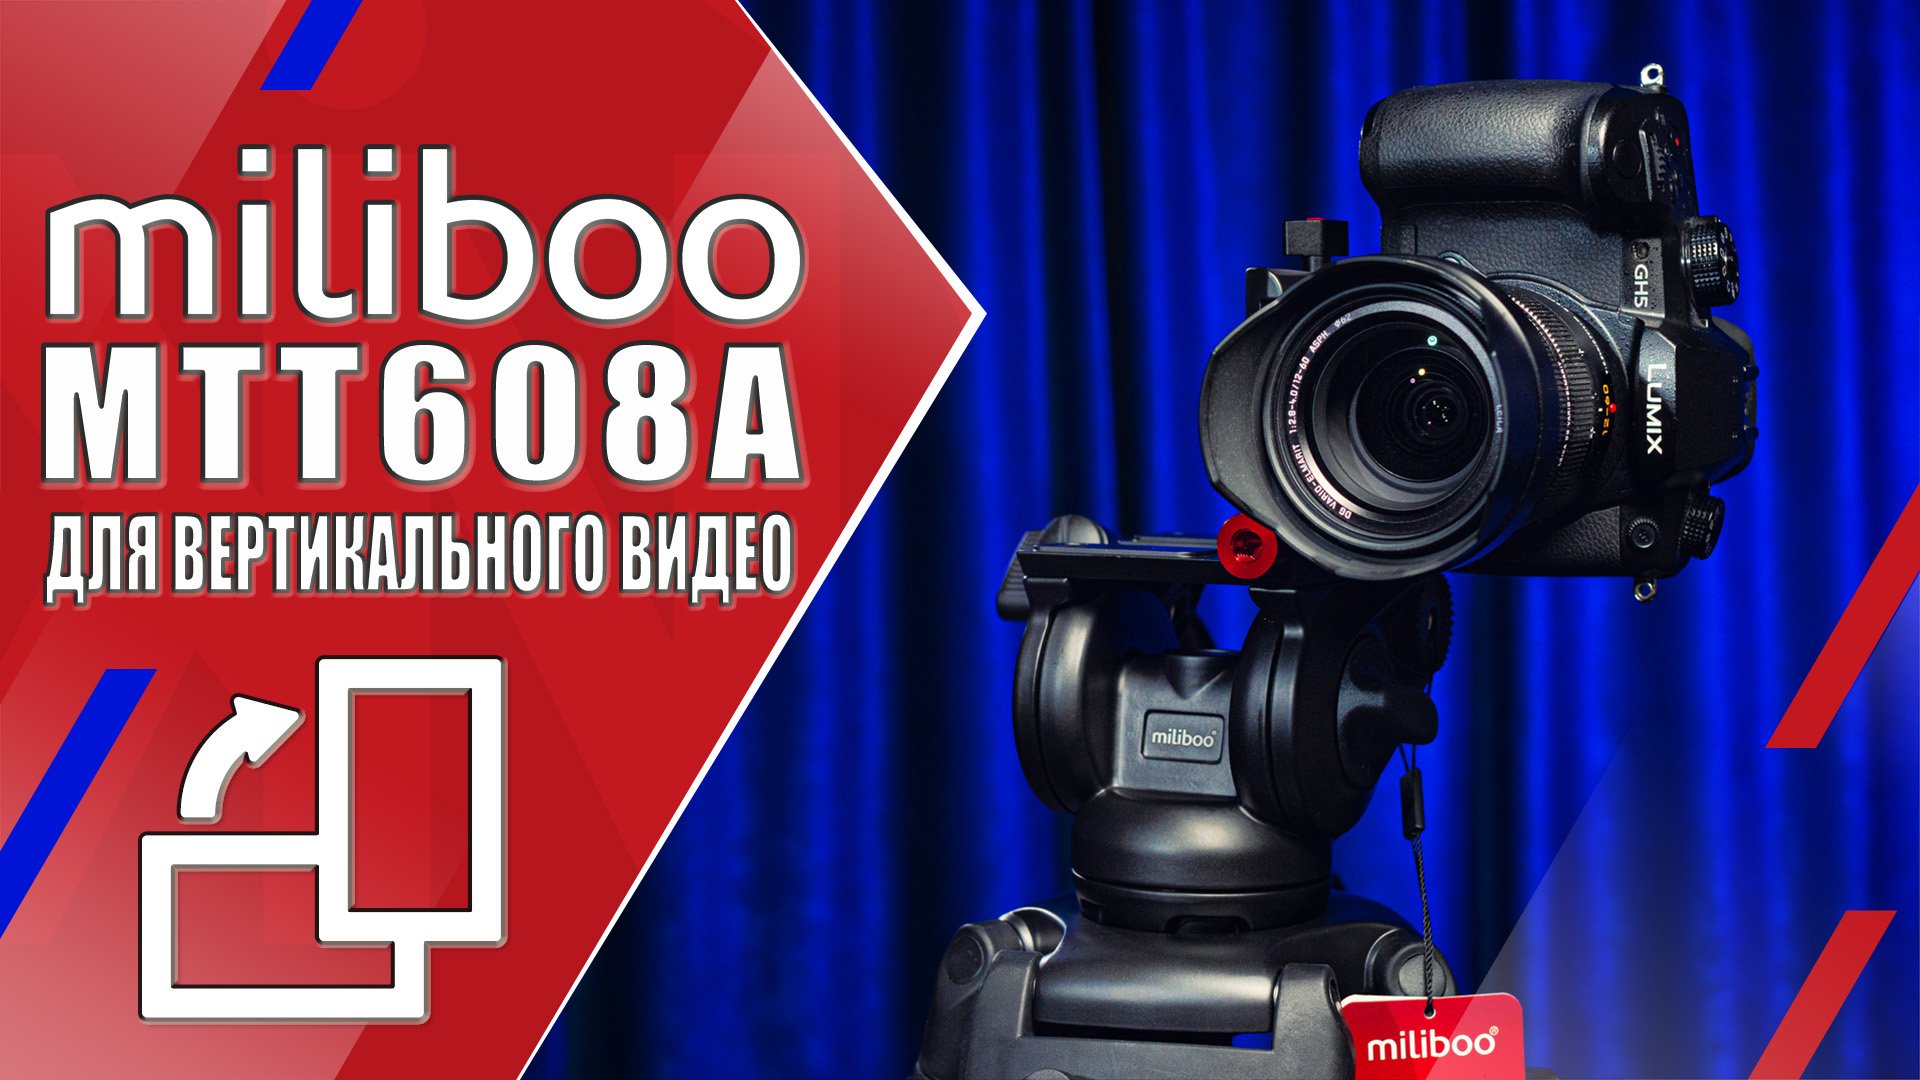 Miliboo MTT608A | Видеоштатив с поворотным механизмом головы для вертикальной съёмки